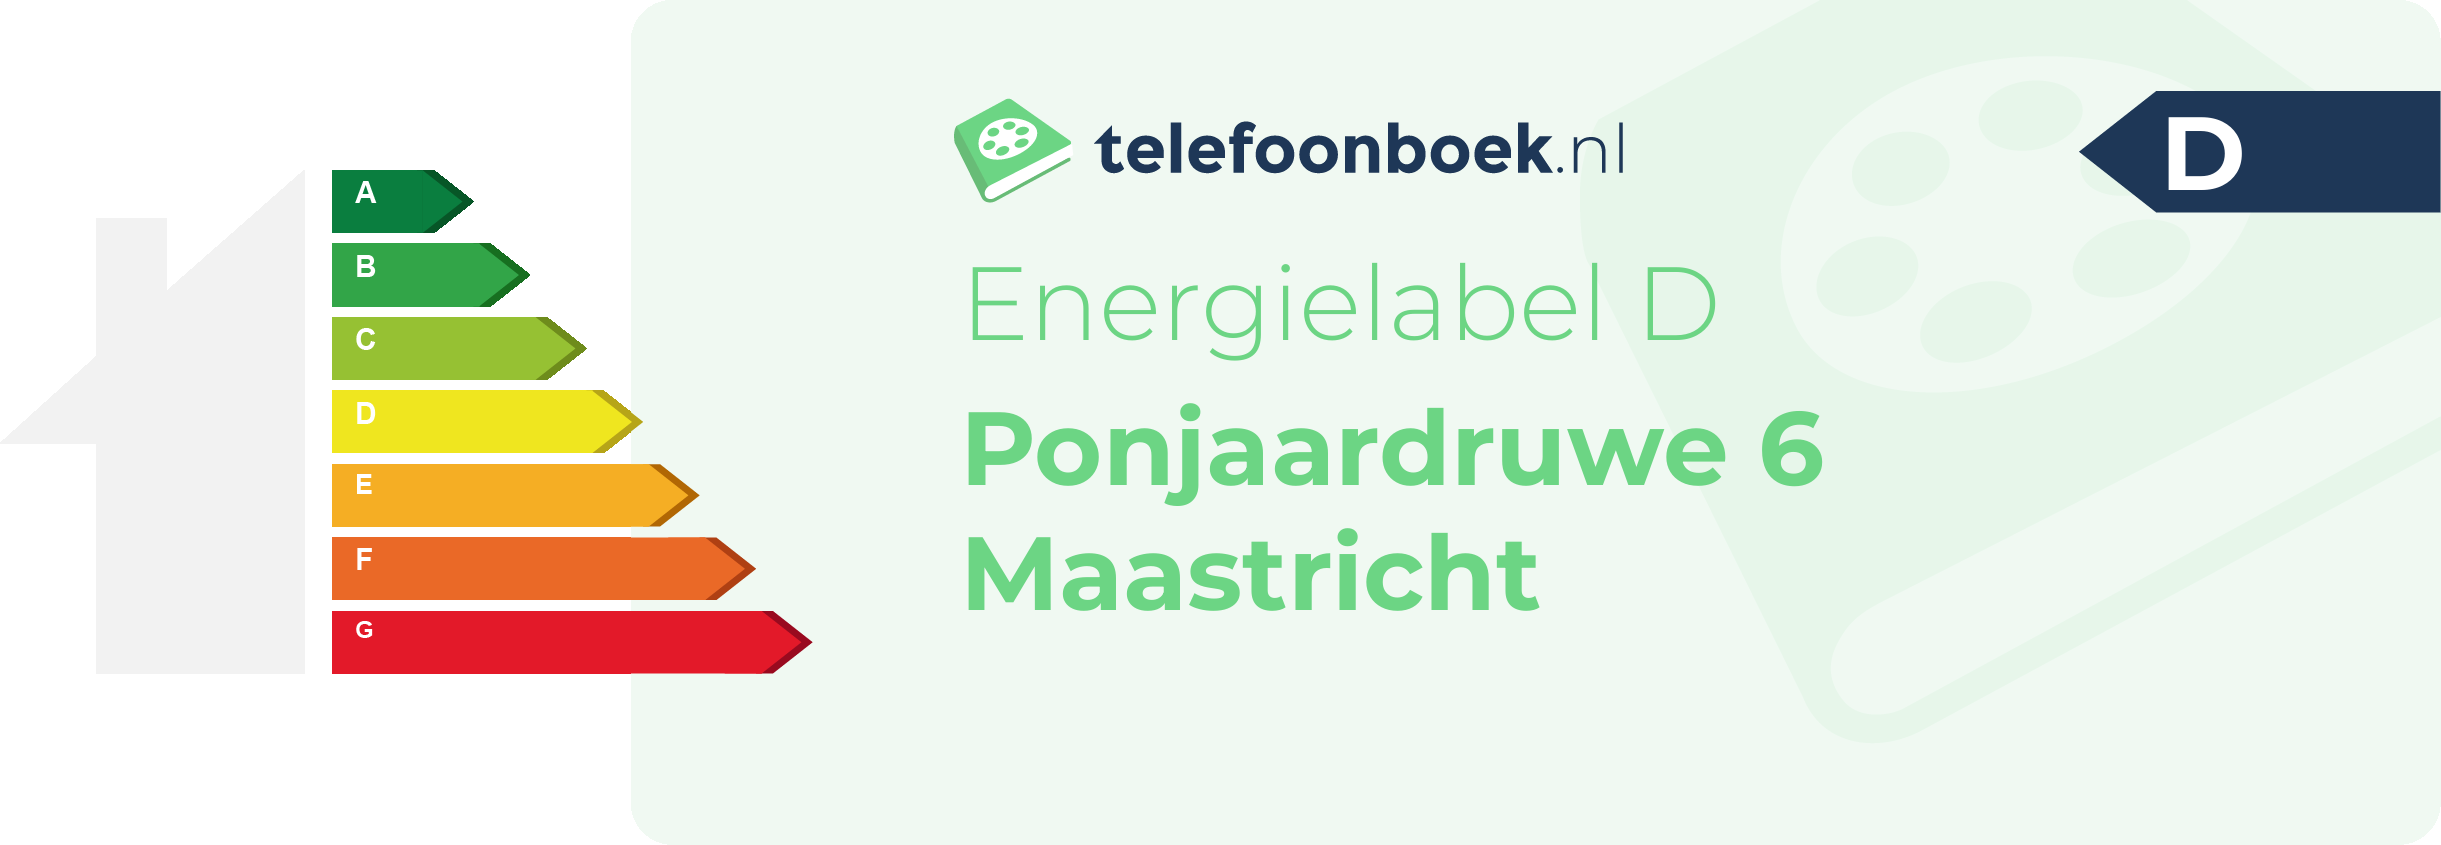 Energielabel Ponjaardruwe 6 Maastricht